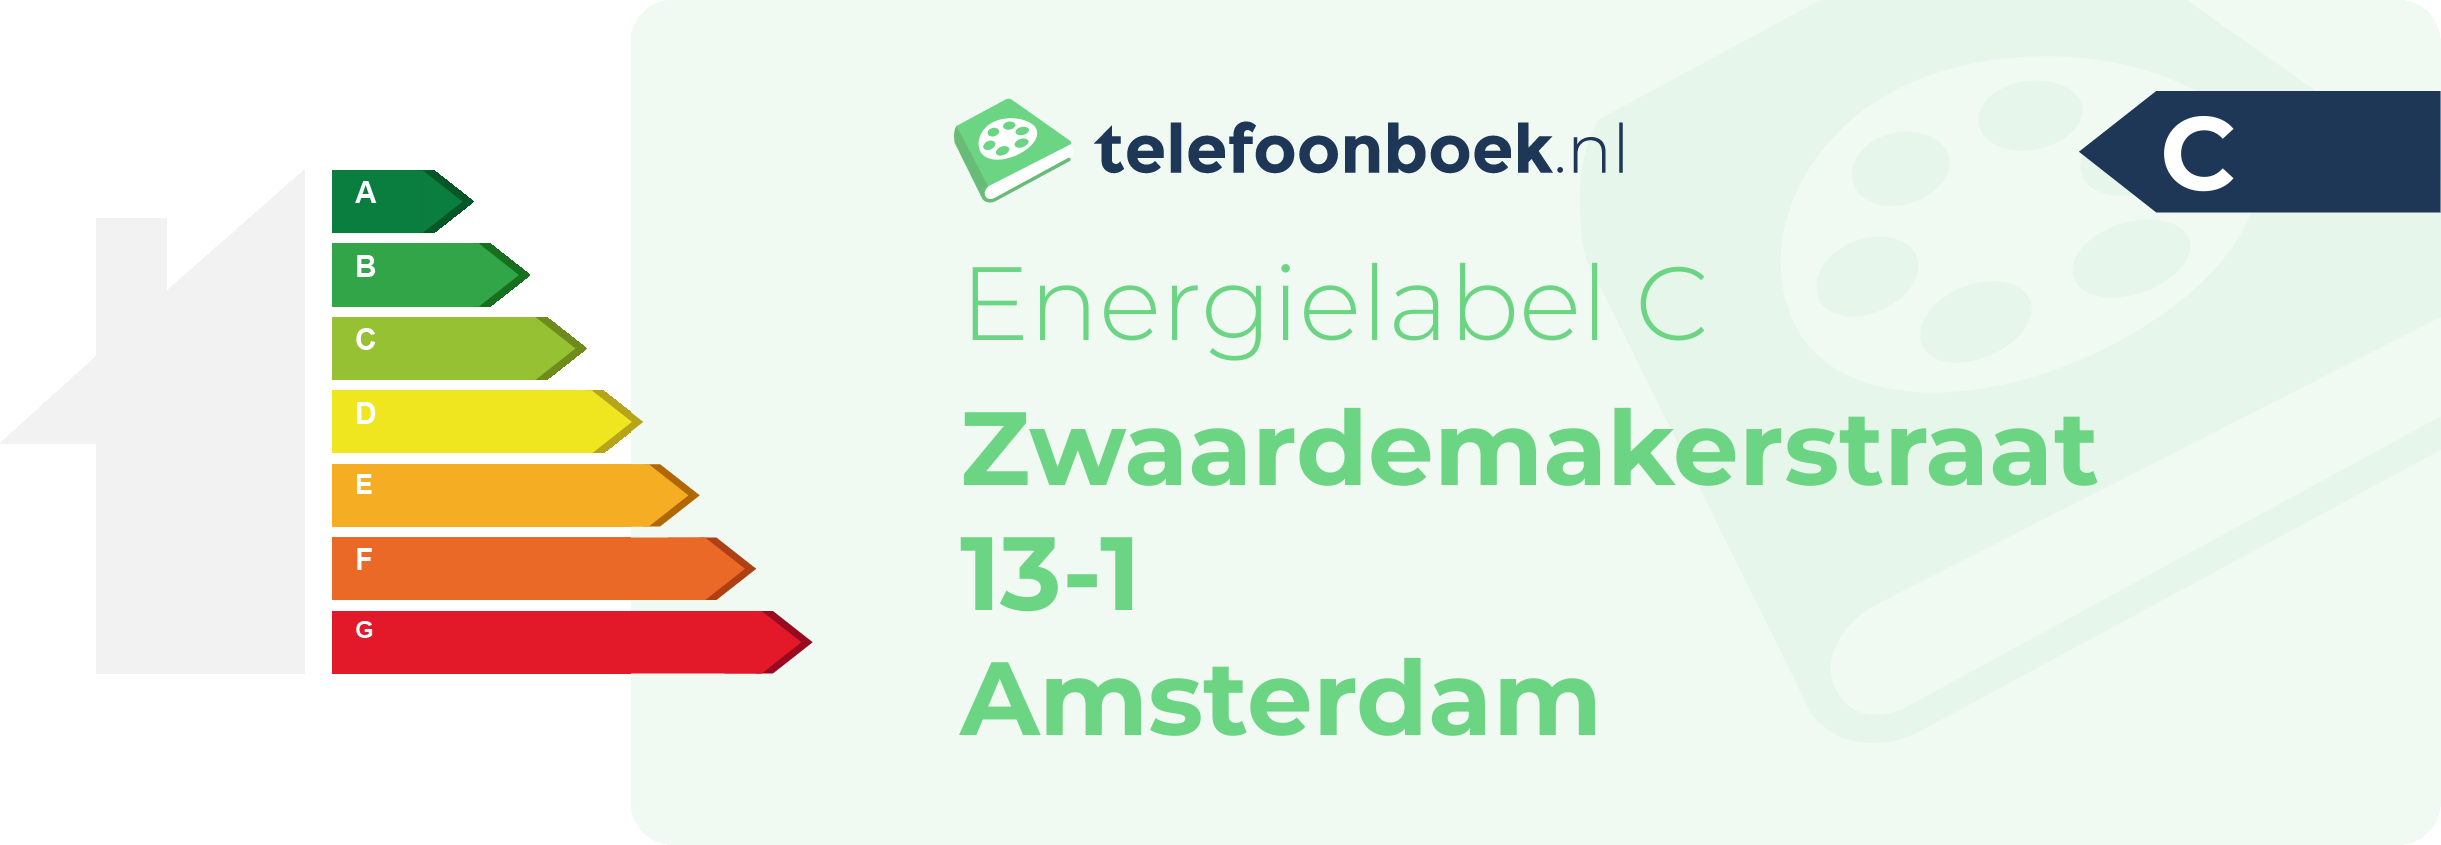 Energielabel Zwaardemakerstraat 13-1 Amsterdam